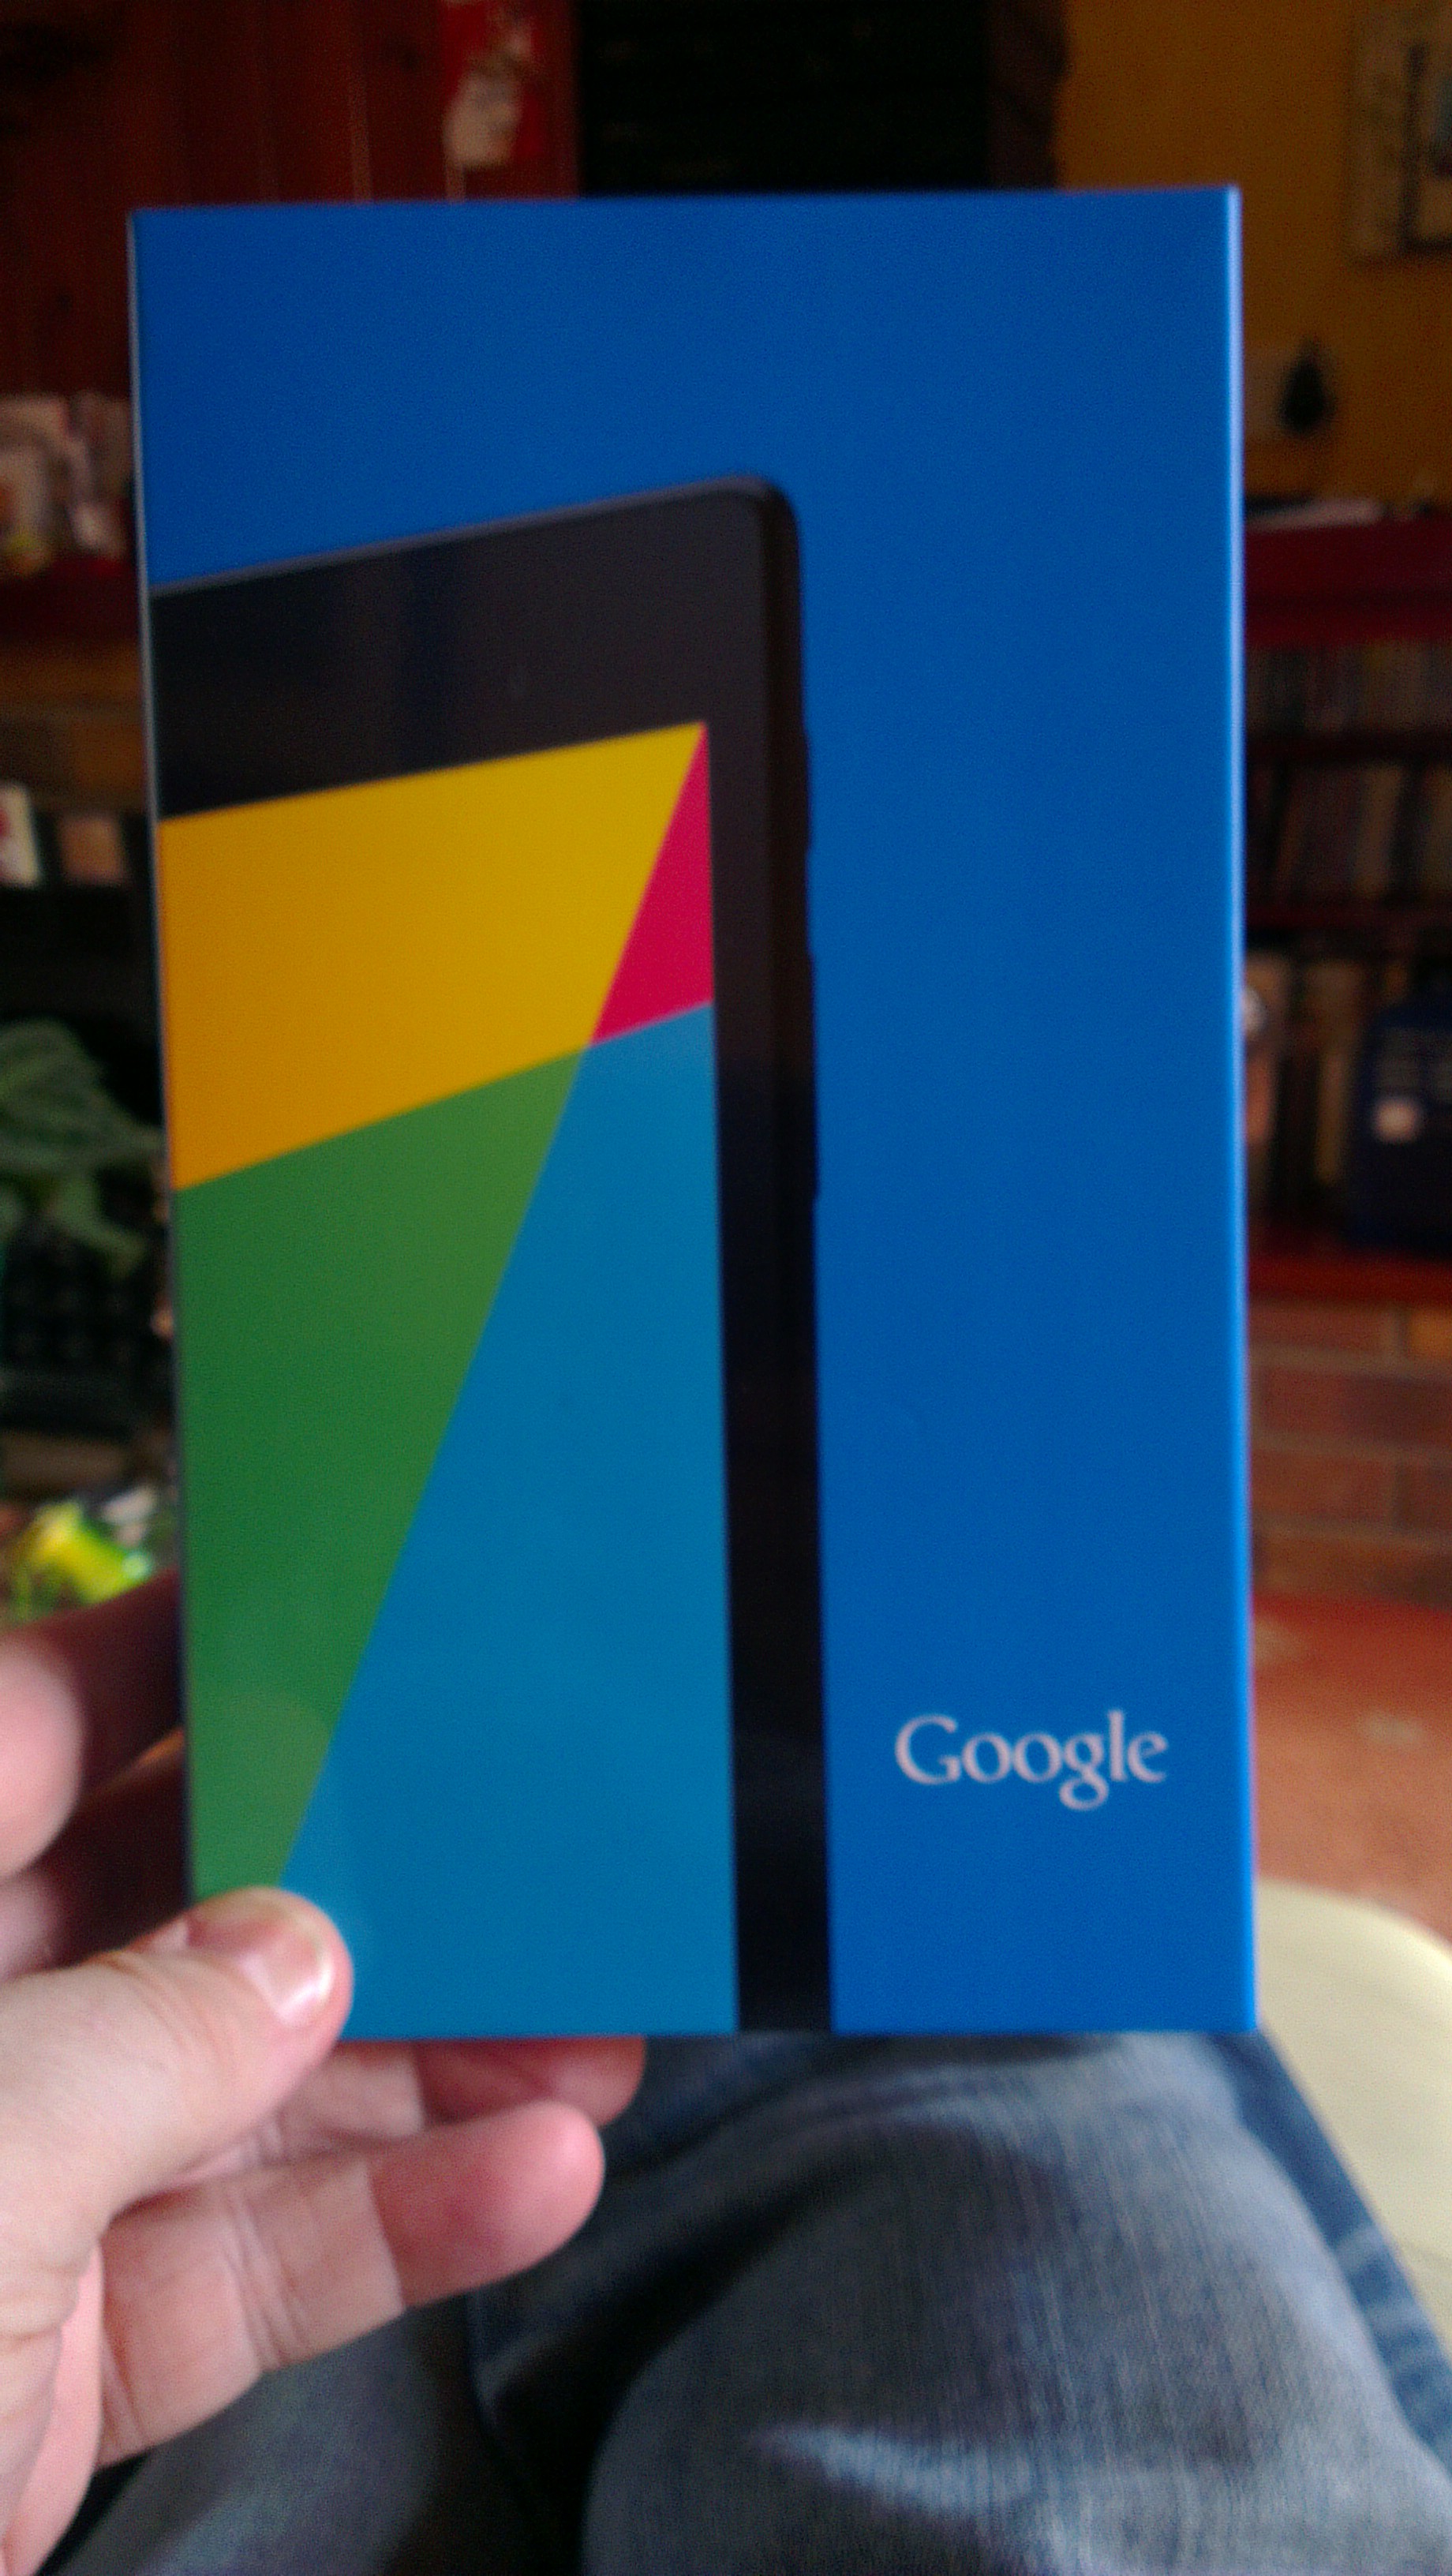 New Nexus 7